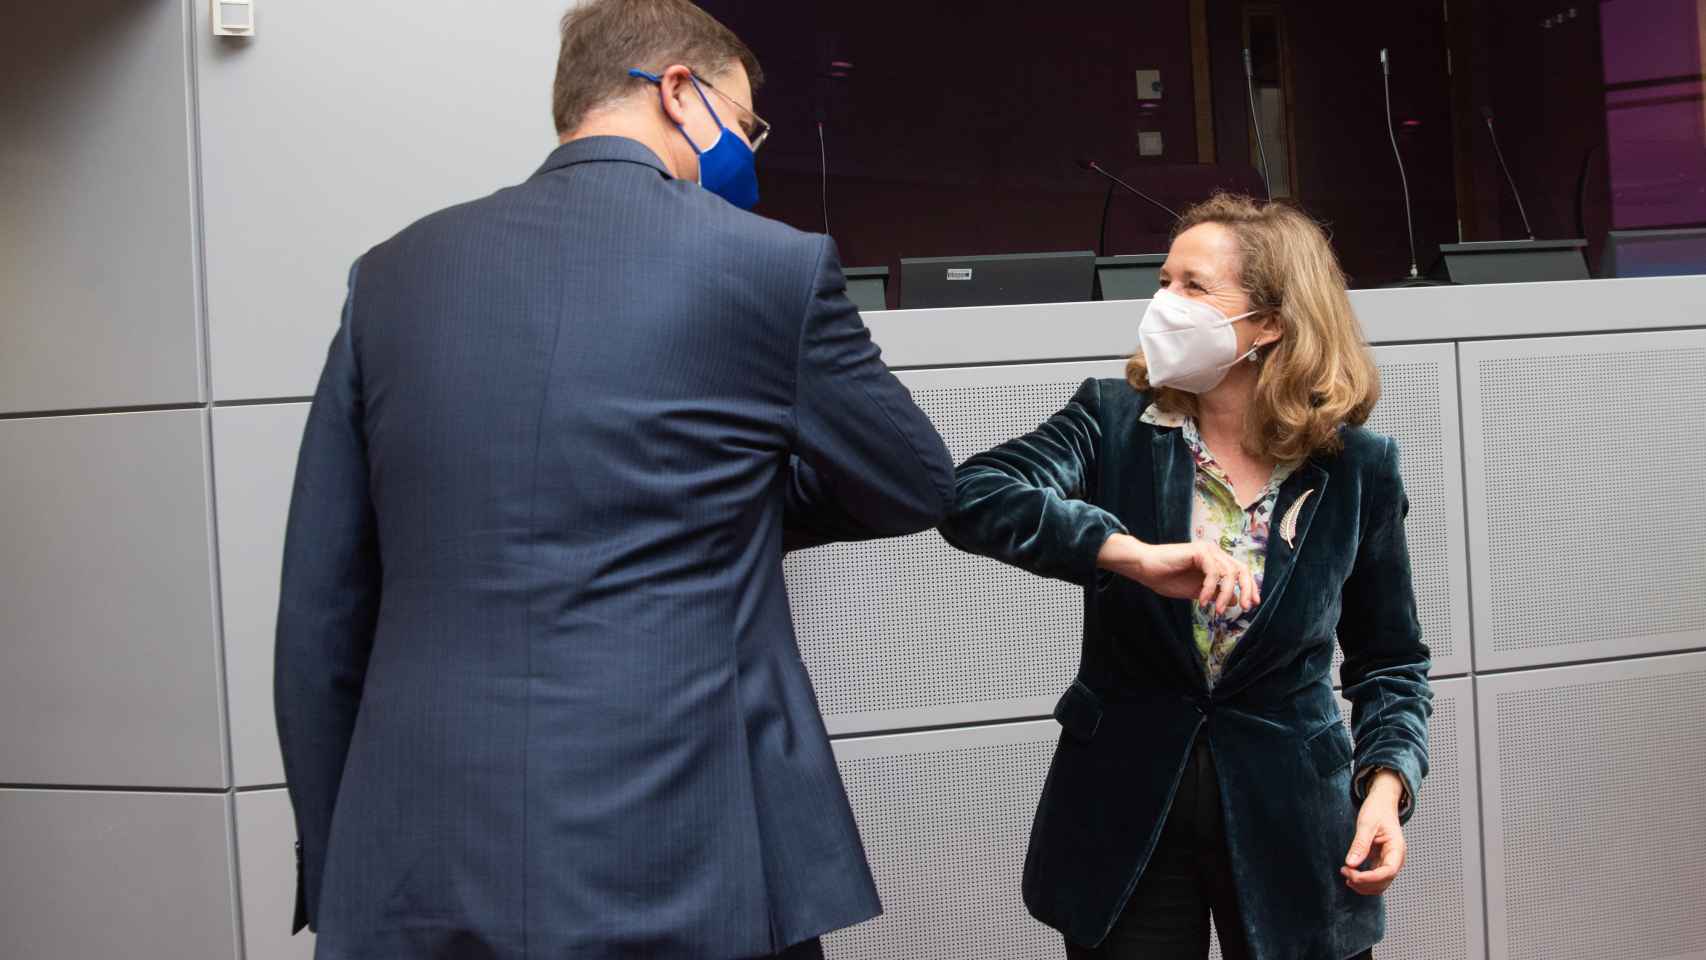 Nadia Calviño saluda al vicepresidente económico de la Comisión, Valdis Dombrovskis, durante su visita a Bruselas este jueves